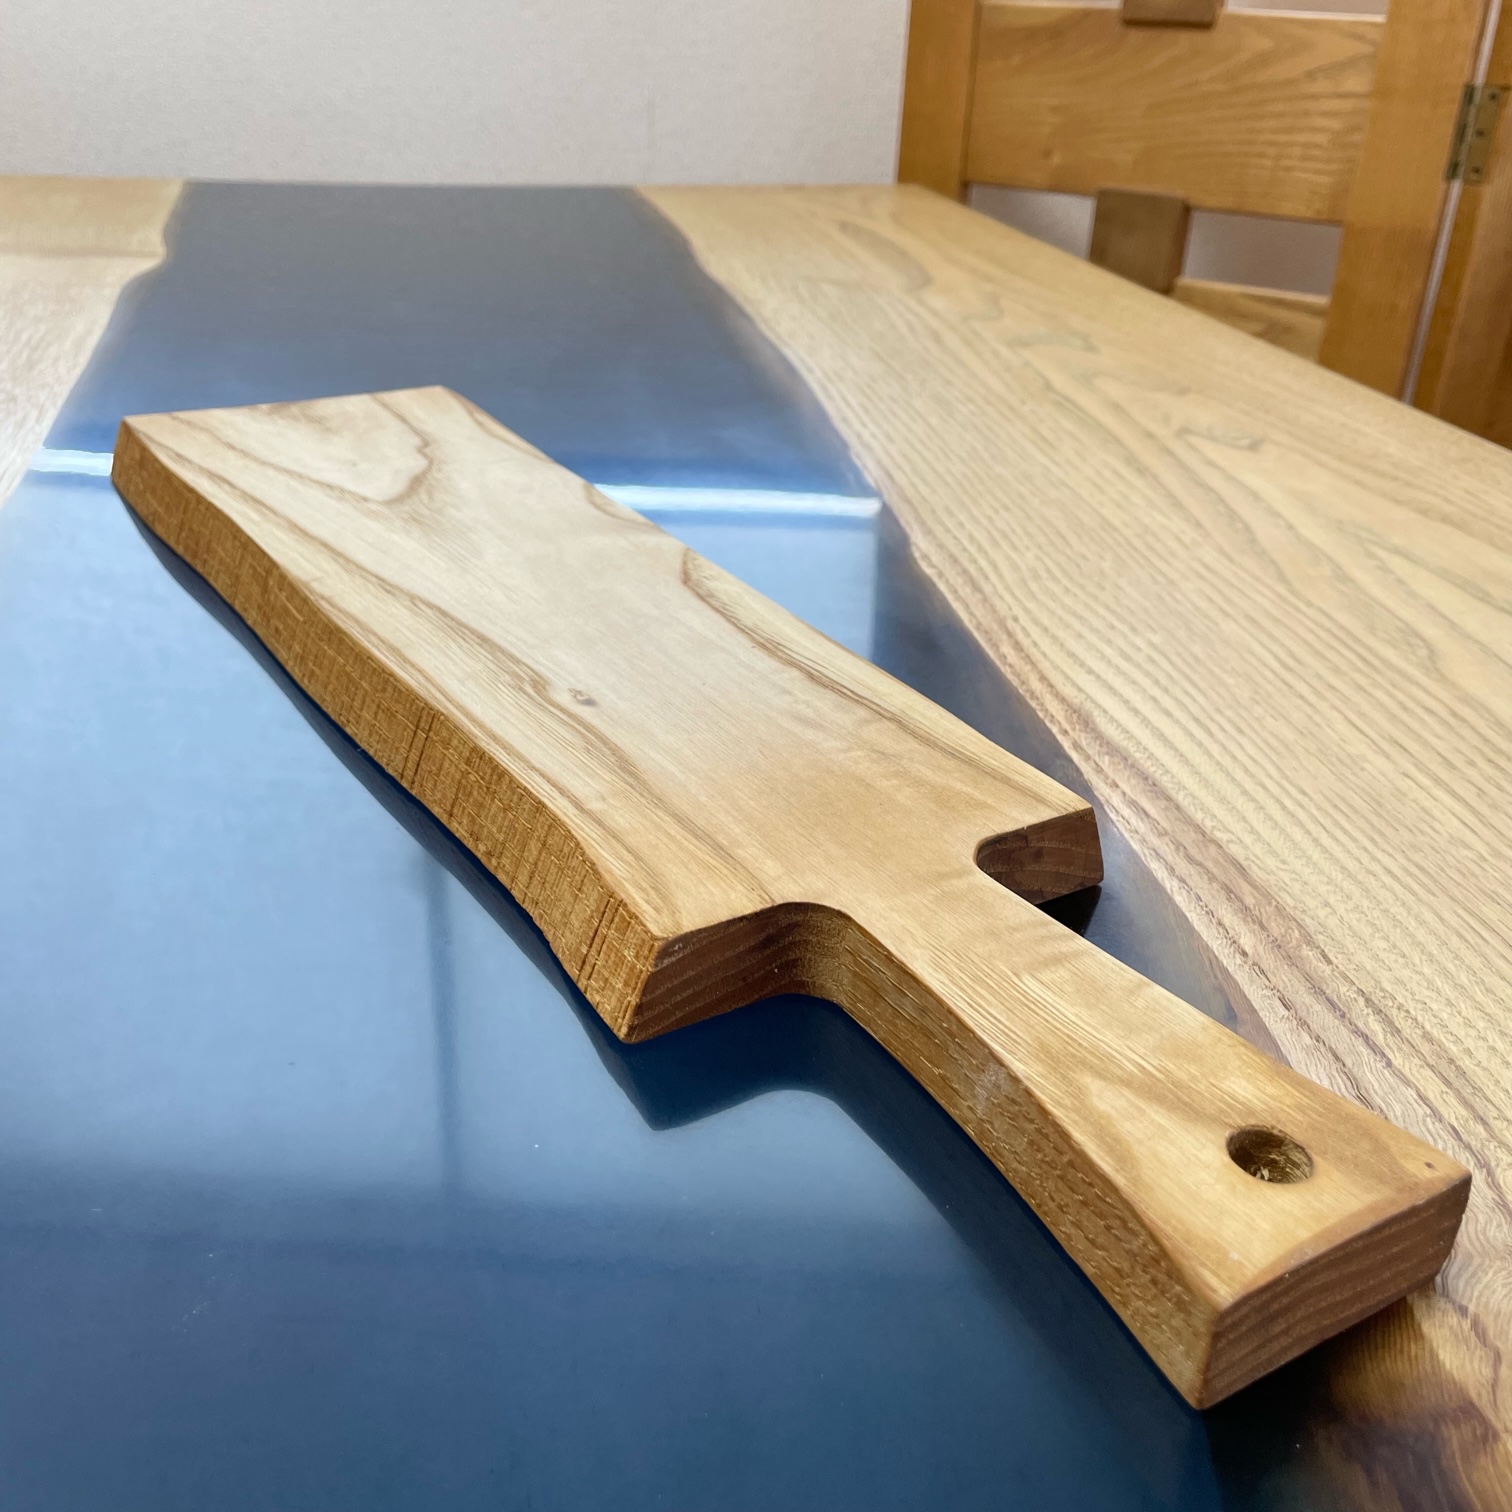 国産 まな板 カッティングボード 無垢材 木製 栗の木 日本製 まないた キッチン 木製家具 カットボード 日用品 ウッドボード 藤枝家具 遊木舎